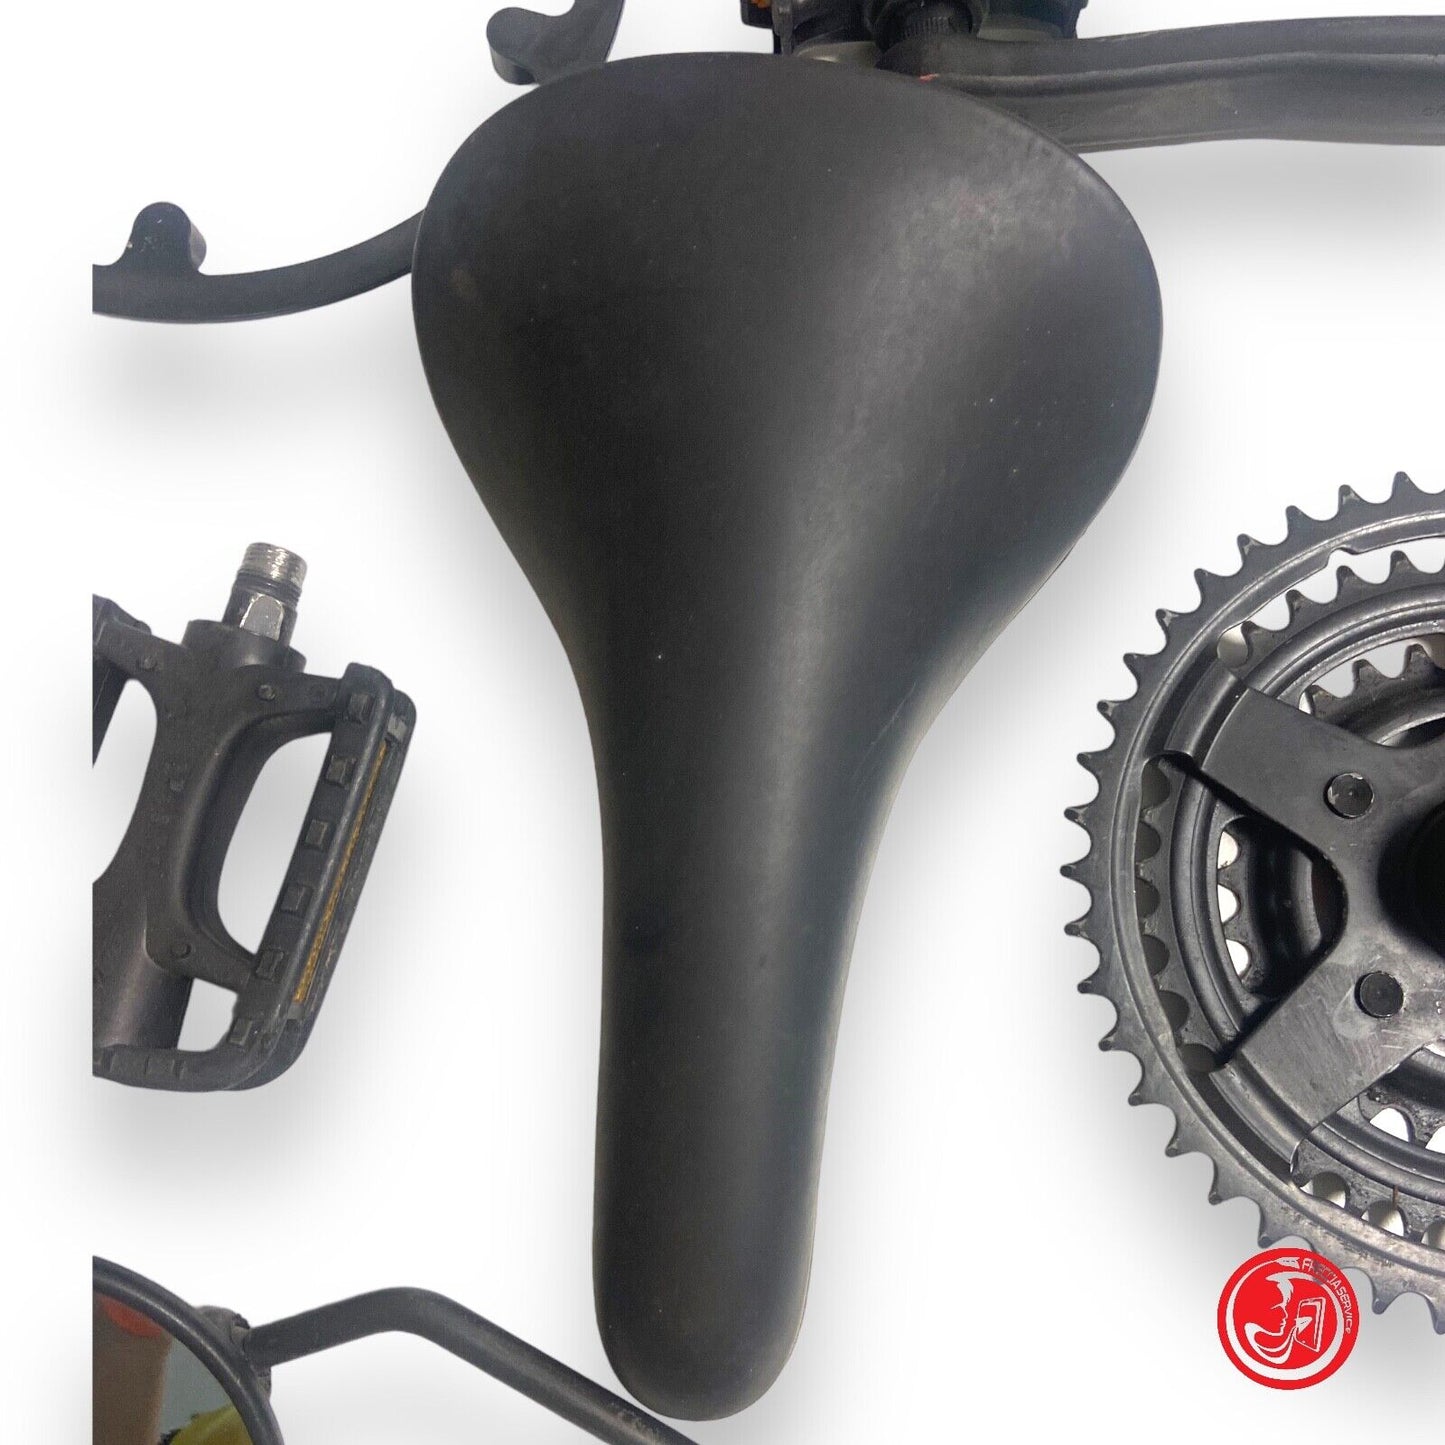 Accessori per le bici - sellino, pedali, supporto per catena